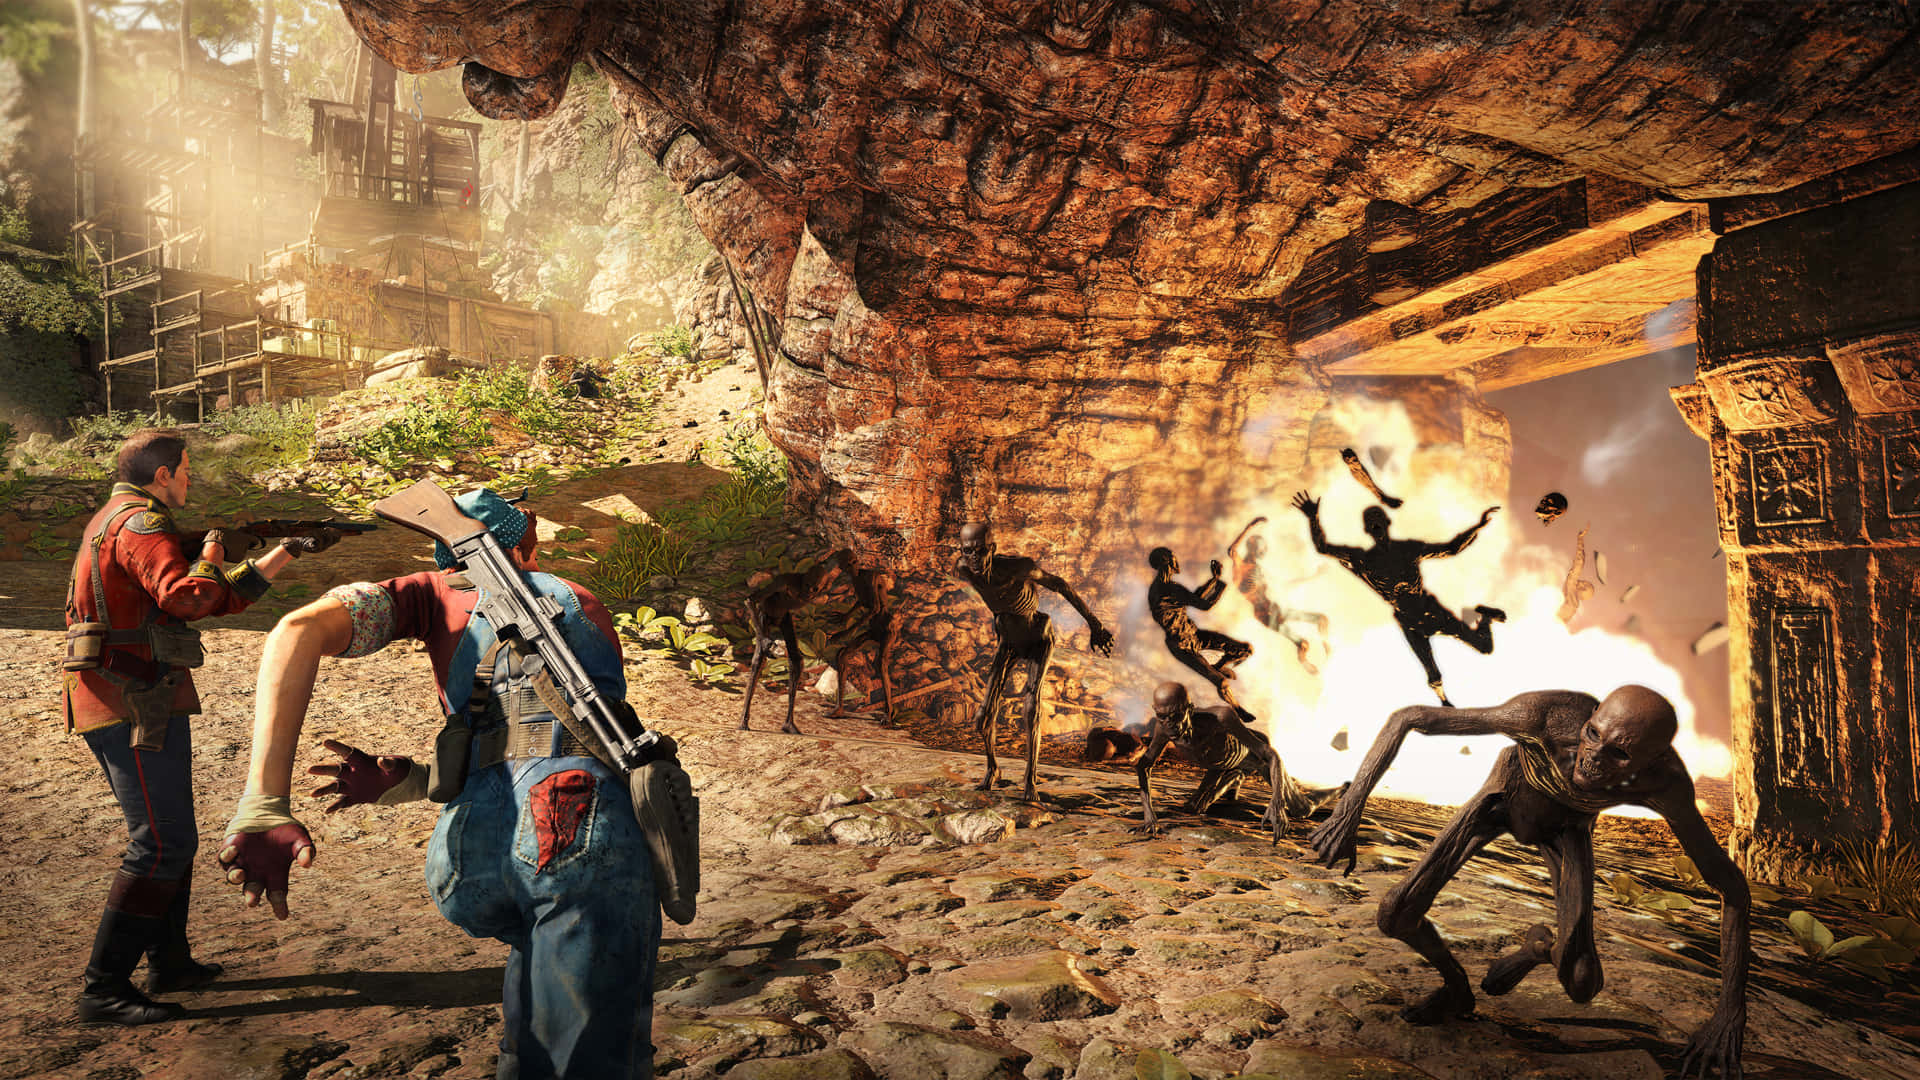 Einbildschirmfoto Eines Videospiels Mit Menschen In Einer Höhle